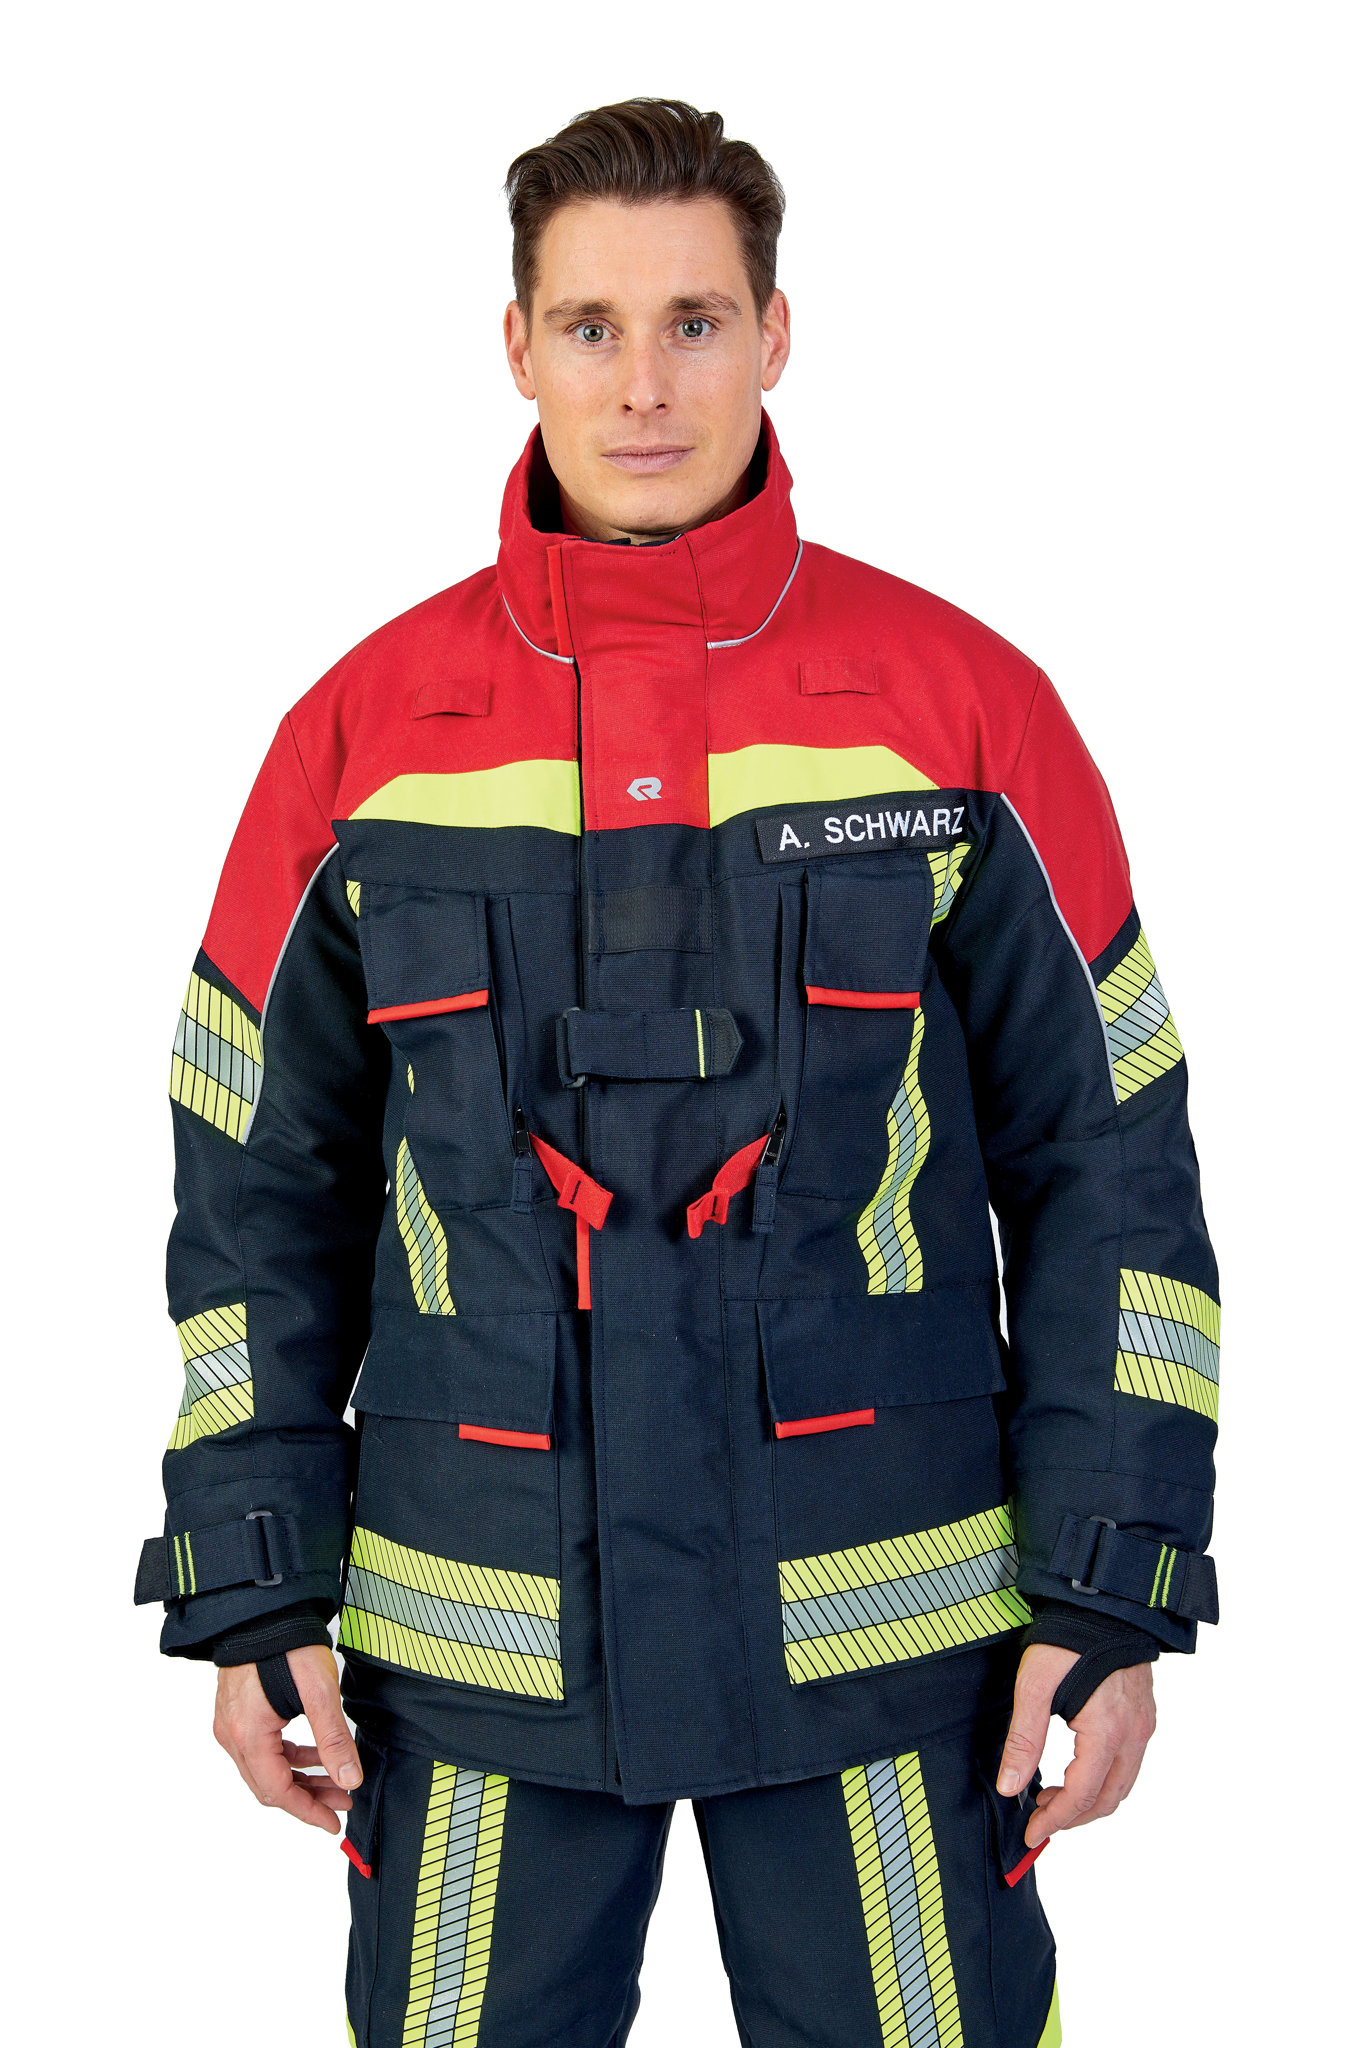 Bild von ROSENBAUER Feuerwehreinsatzjacke FIRE FLEX, NOMEX NXT, schwarzblau/rot, Gr. 40-42 A